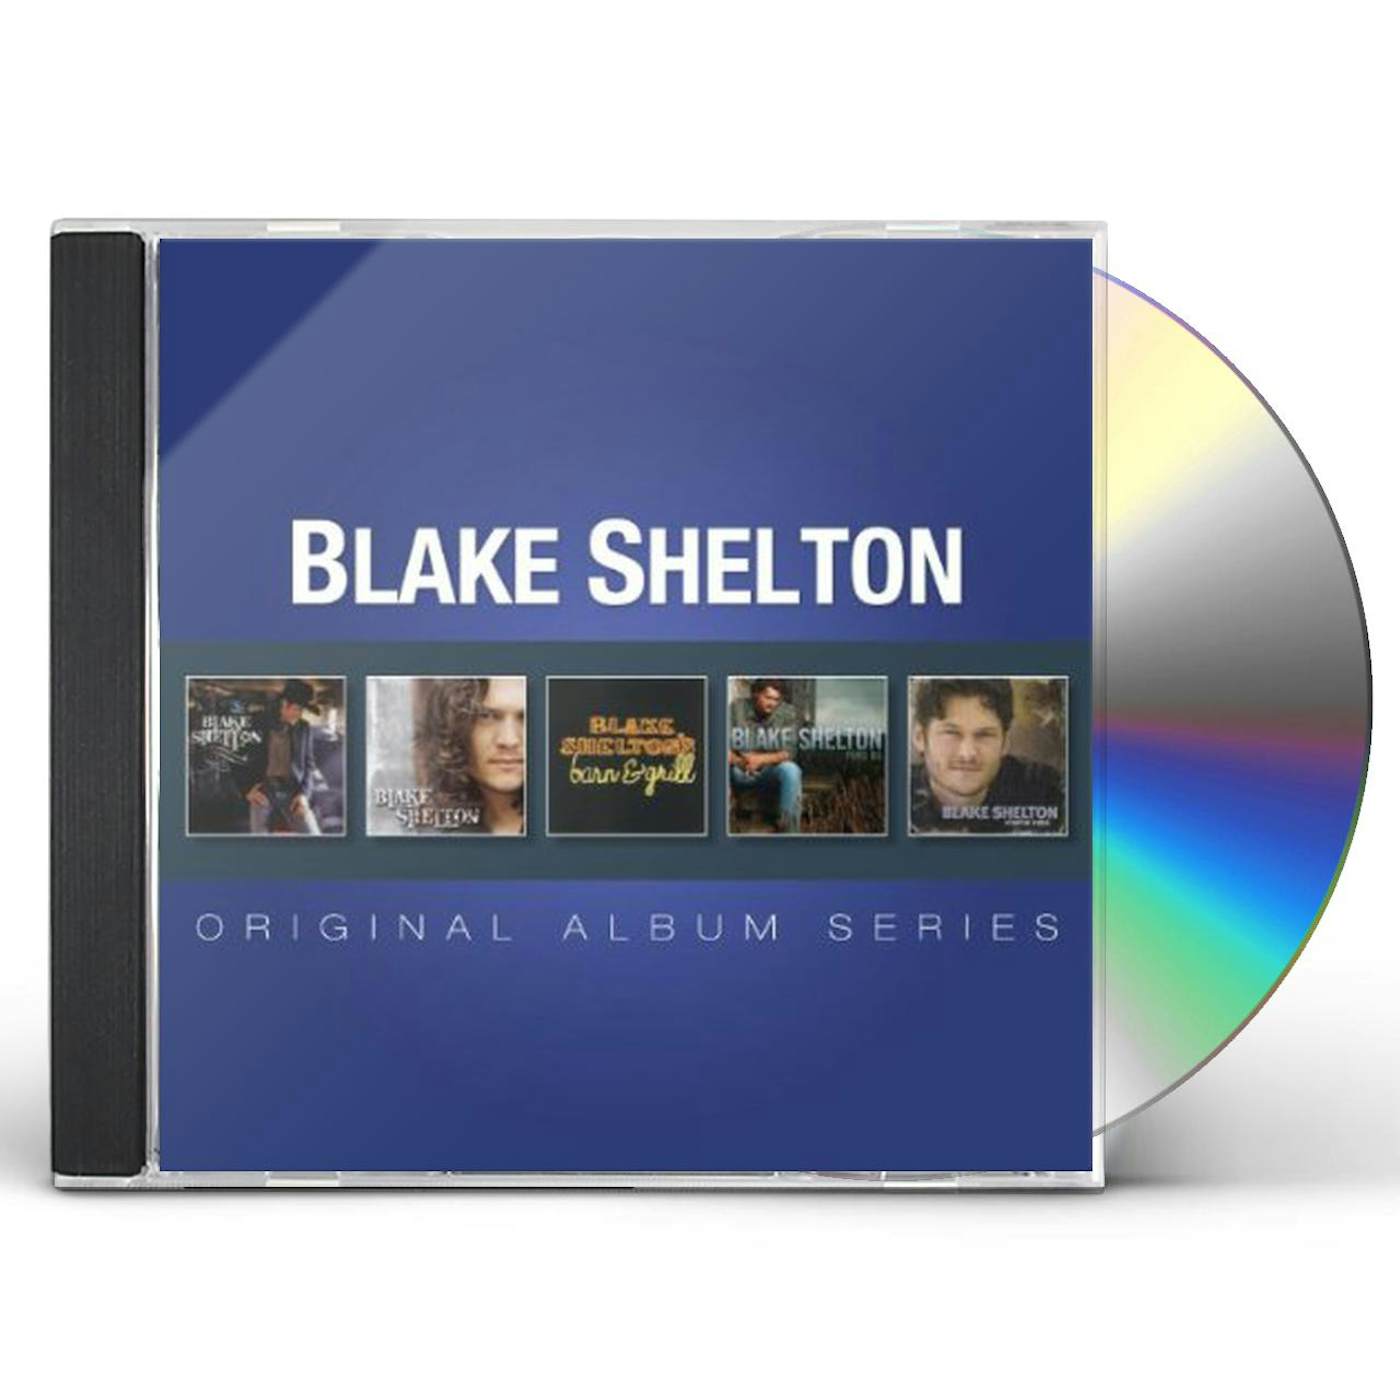 Blake Shelton ORIGINAL ALBUM SERIES CD